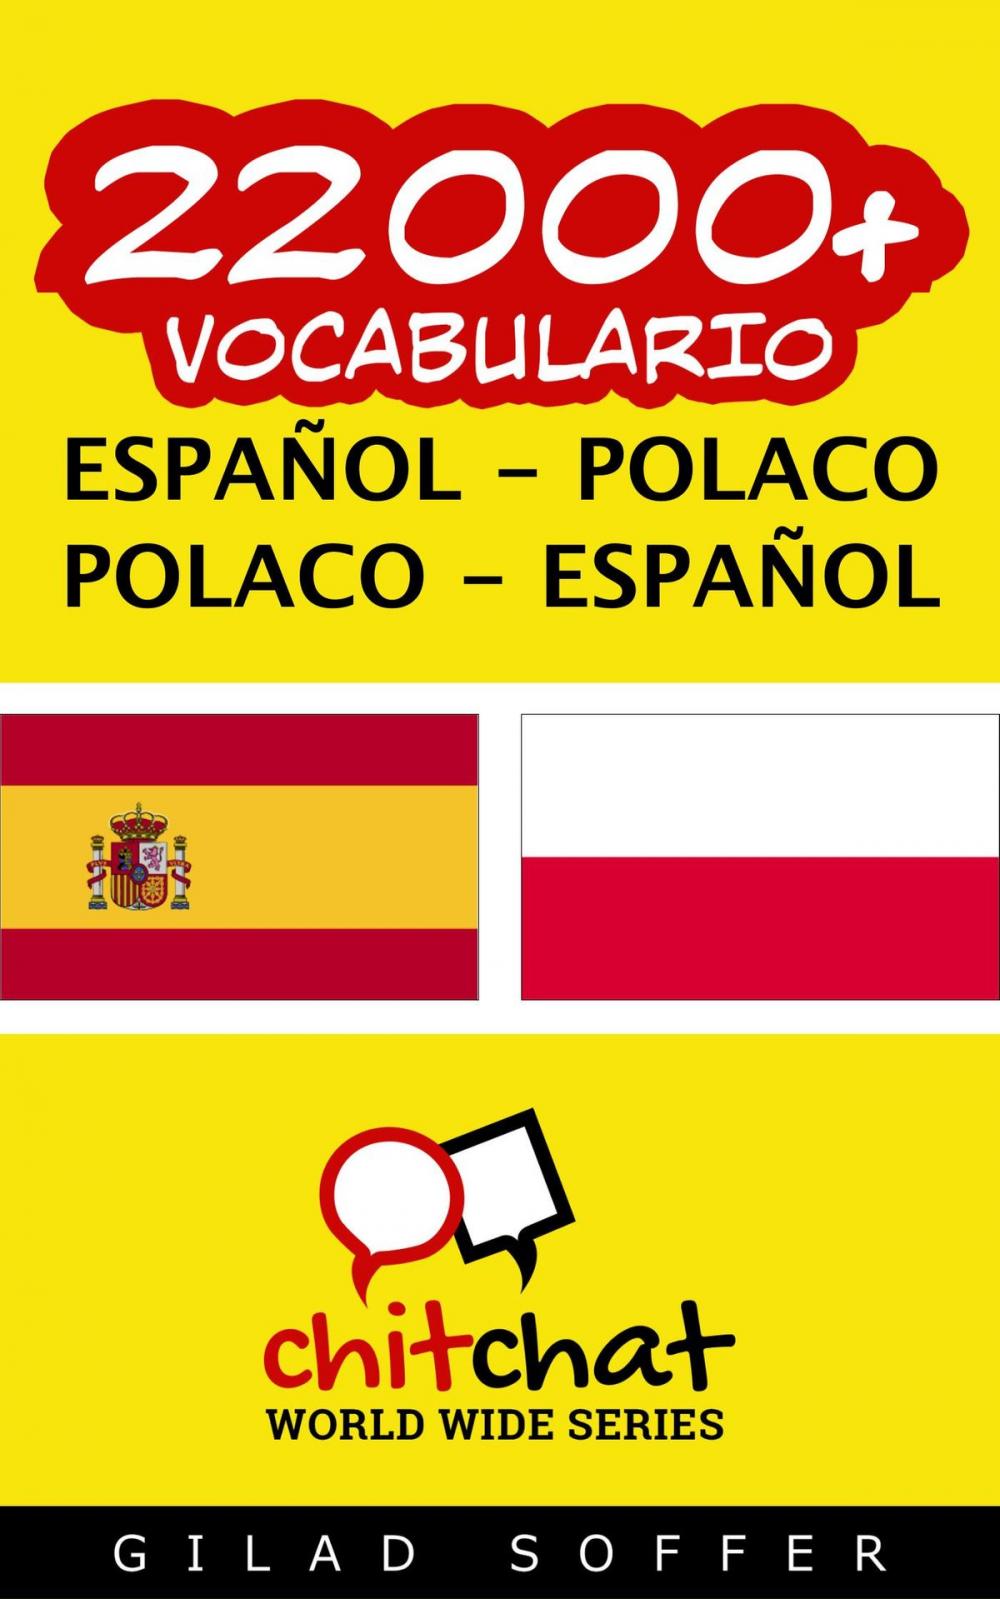 Big bigCover of 22000+ vocabulario español - polaco